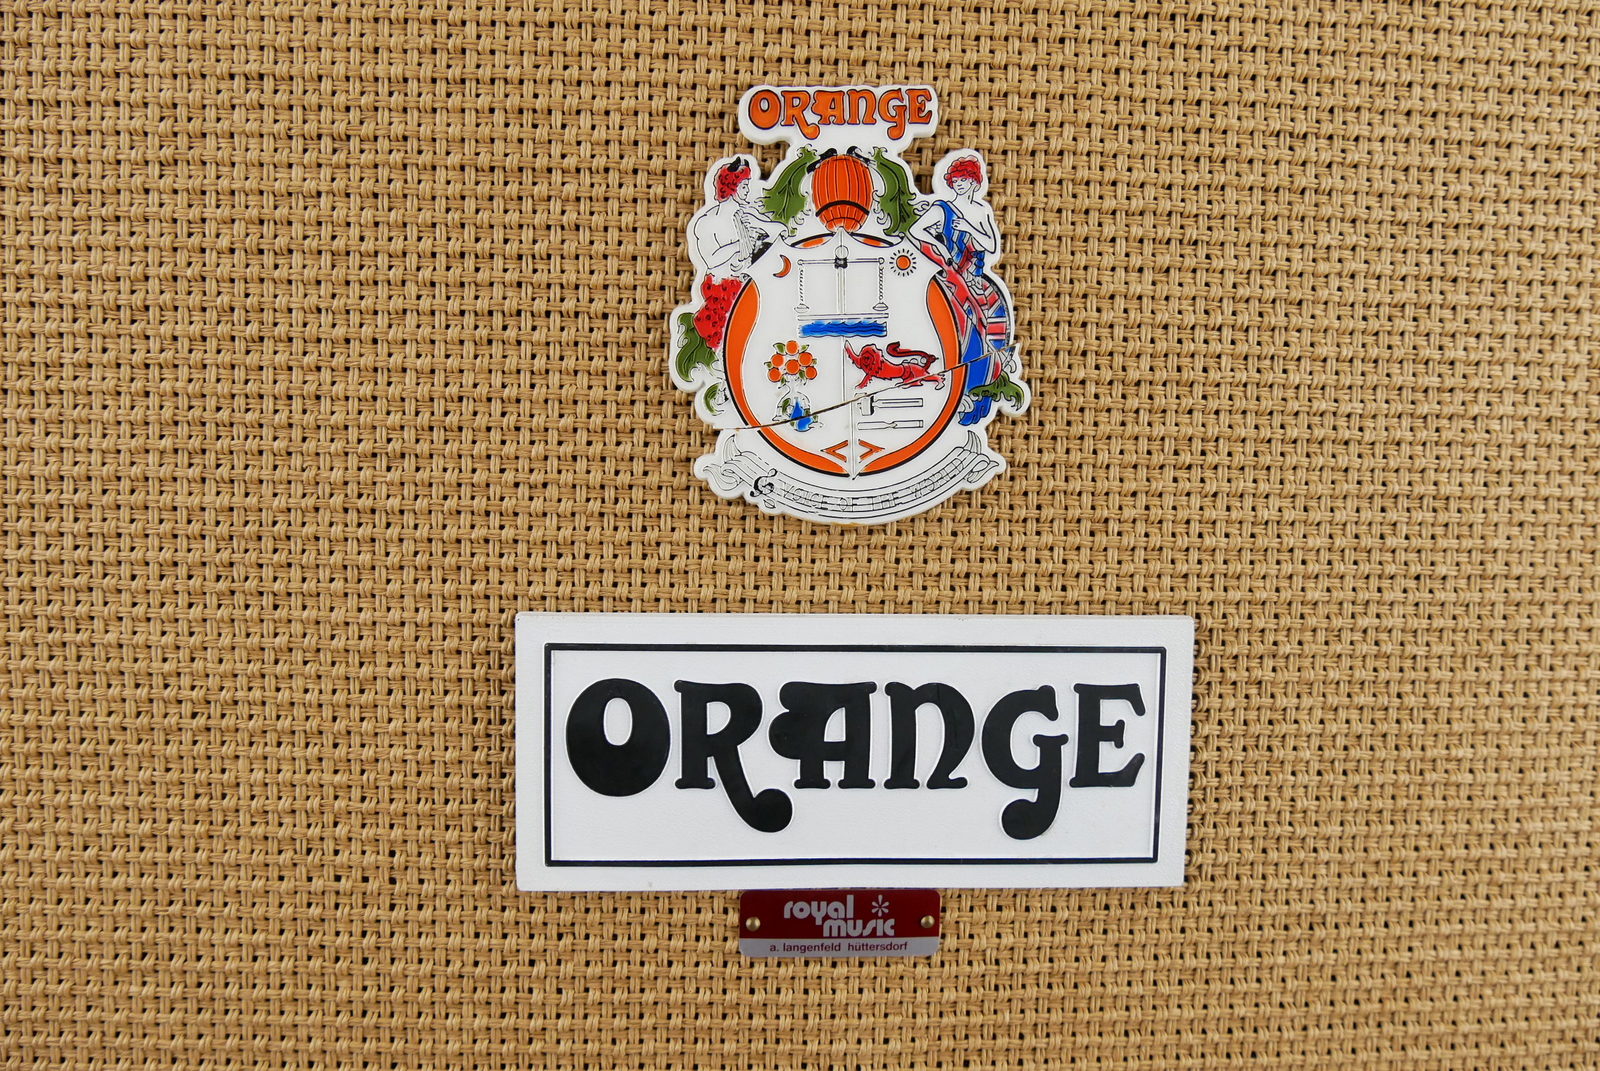 Orange_OR_120_Head_cab_4x12_GB_1975-023.JPG